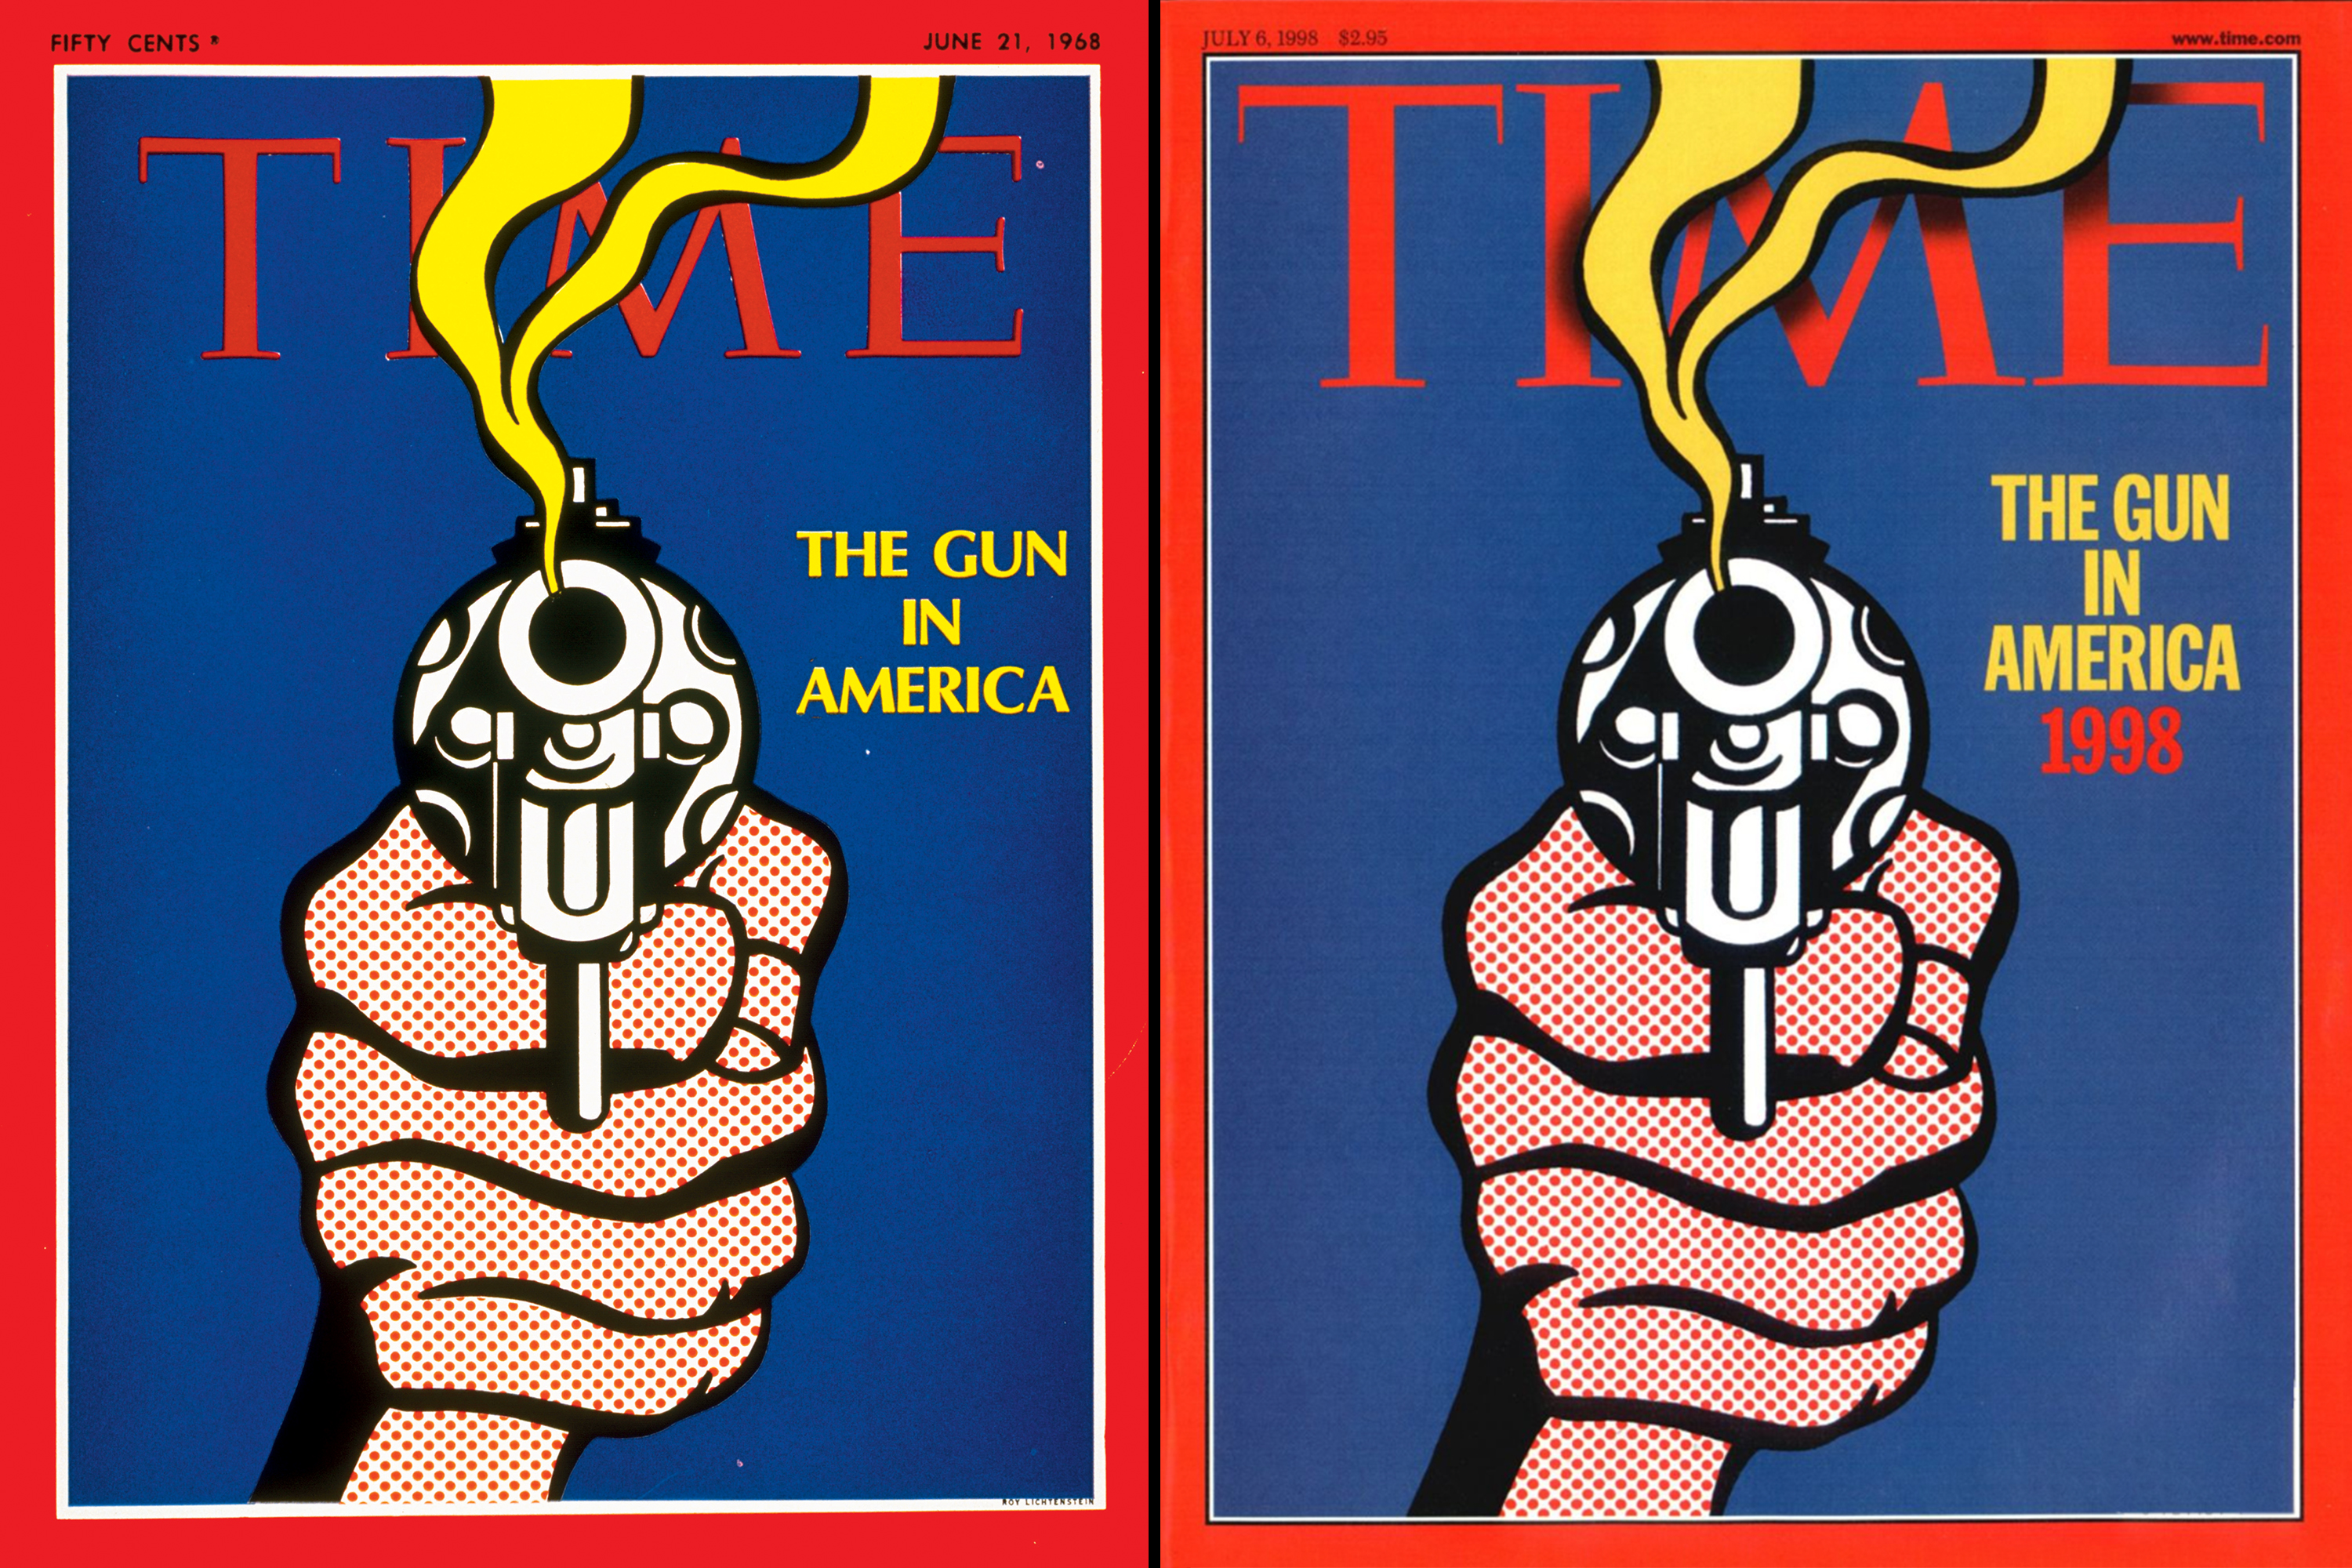 The Gun in America,